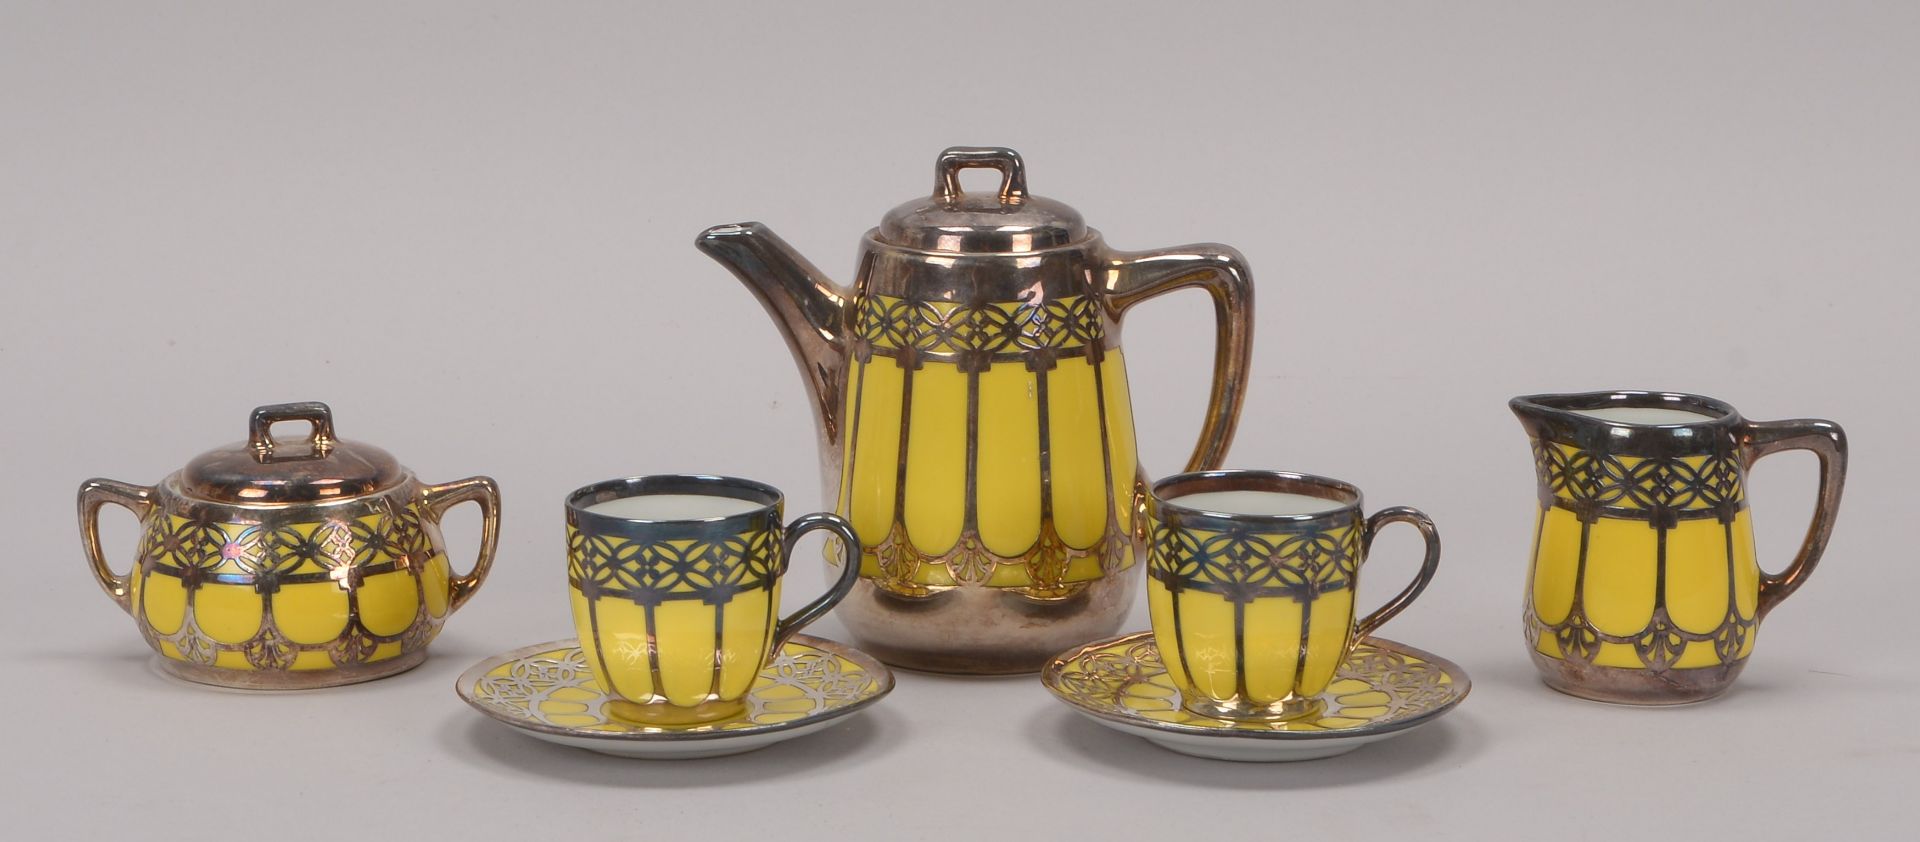 Mokkaservice, -Tete-a-tete-, Porzellan, mit Silberauflage auf gelbem Fond (einzelne Untertasse mit 2